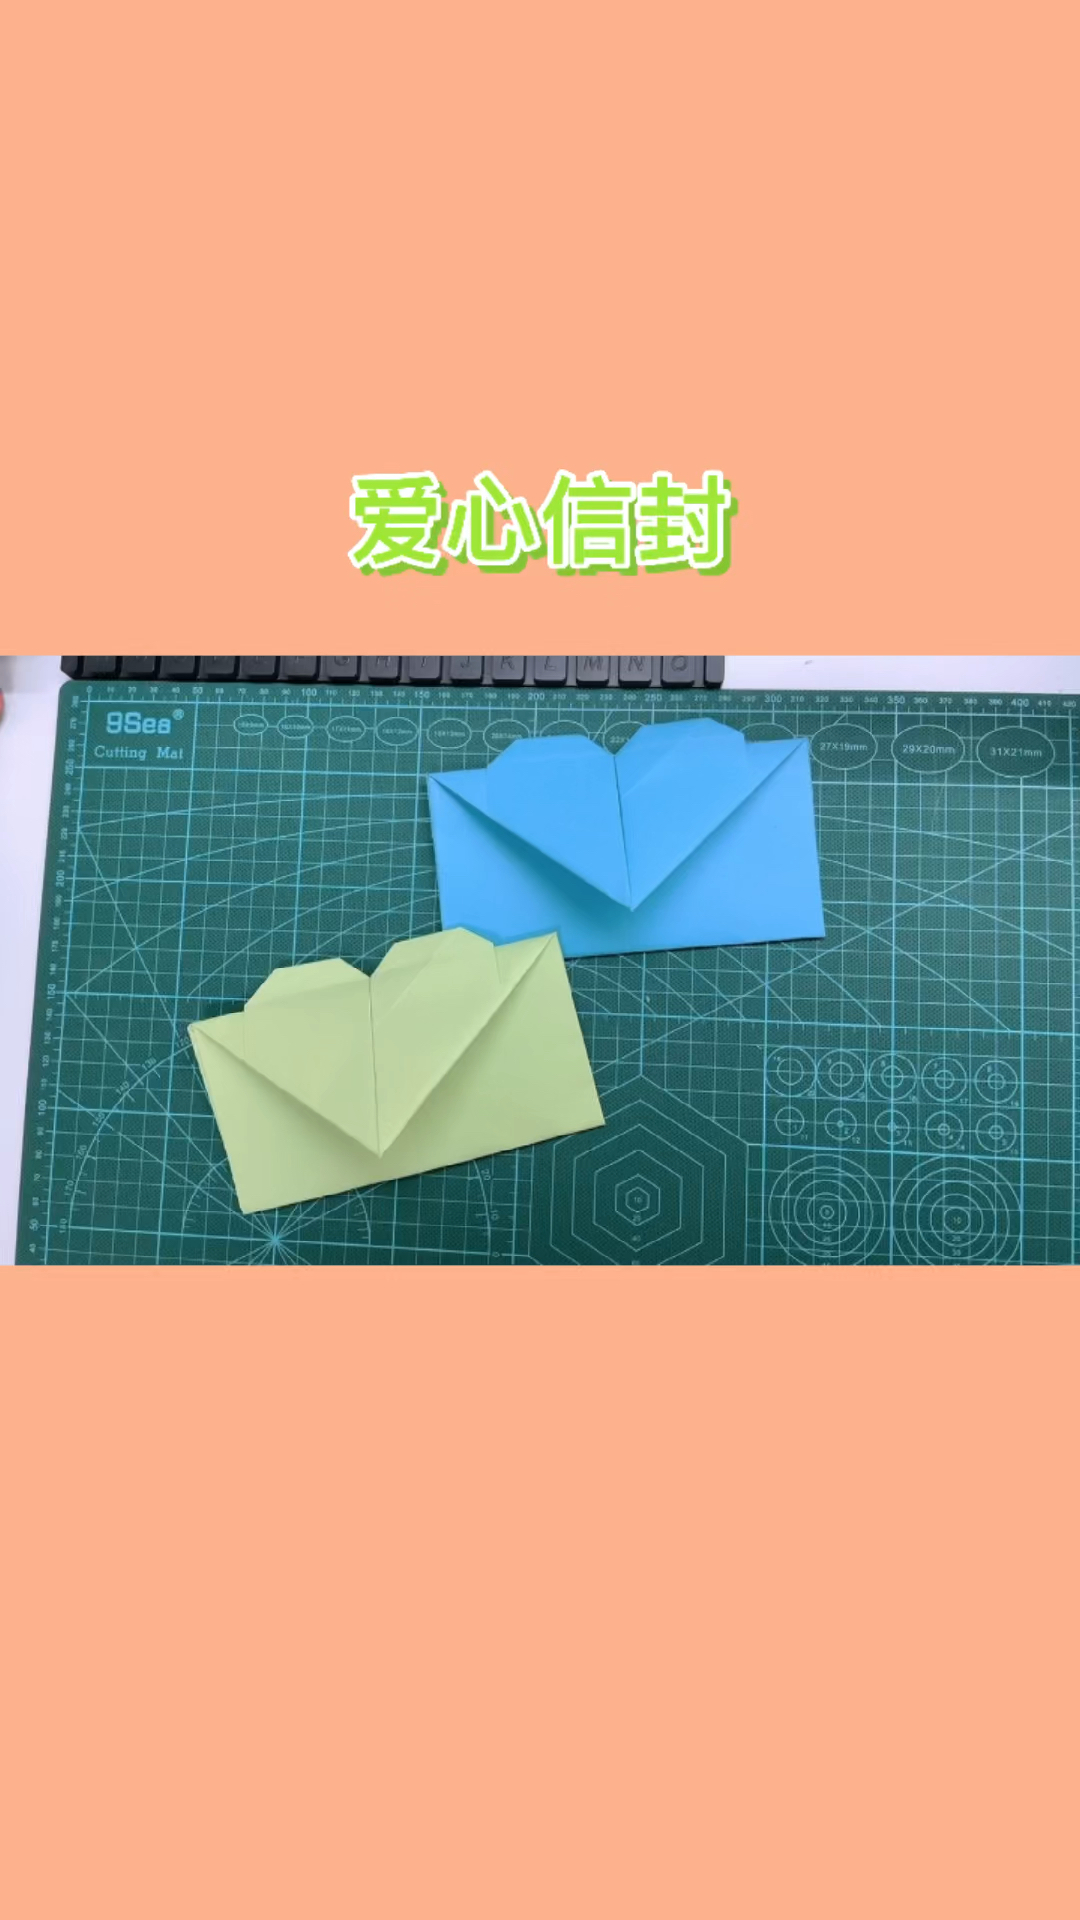 手工制作七夕要到了教你做爱心信封折纸送给喜欢的人